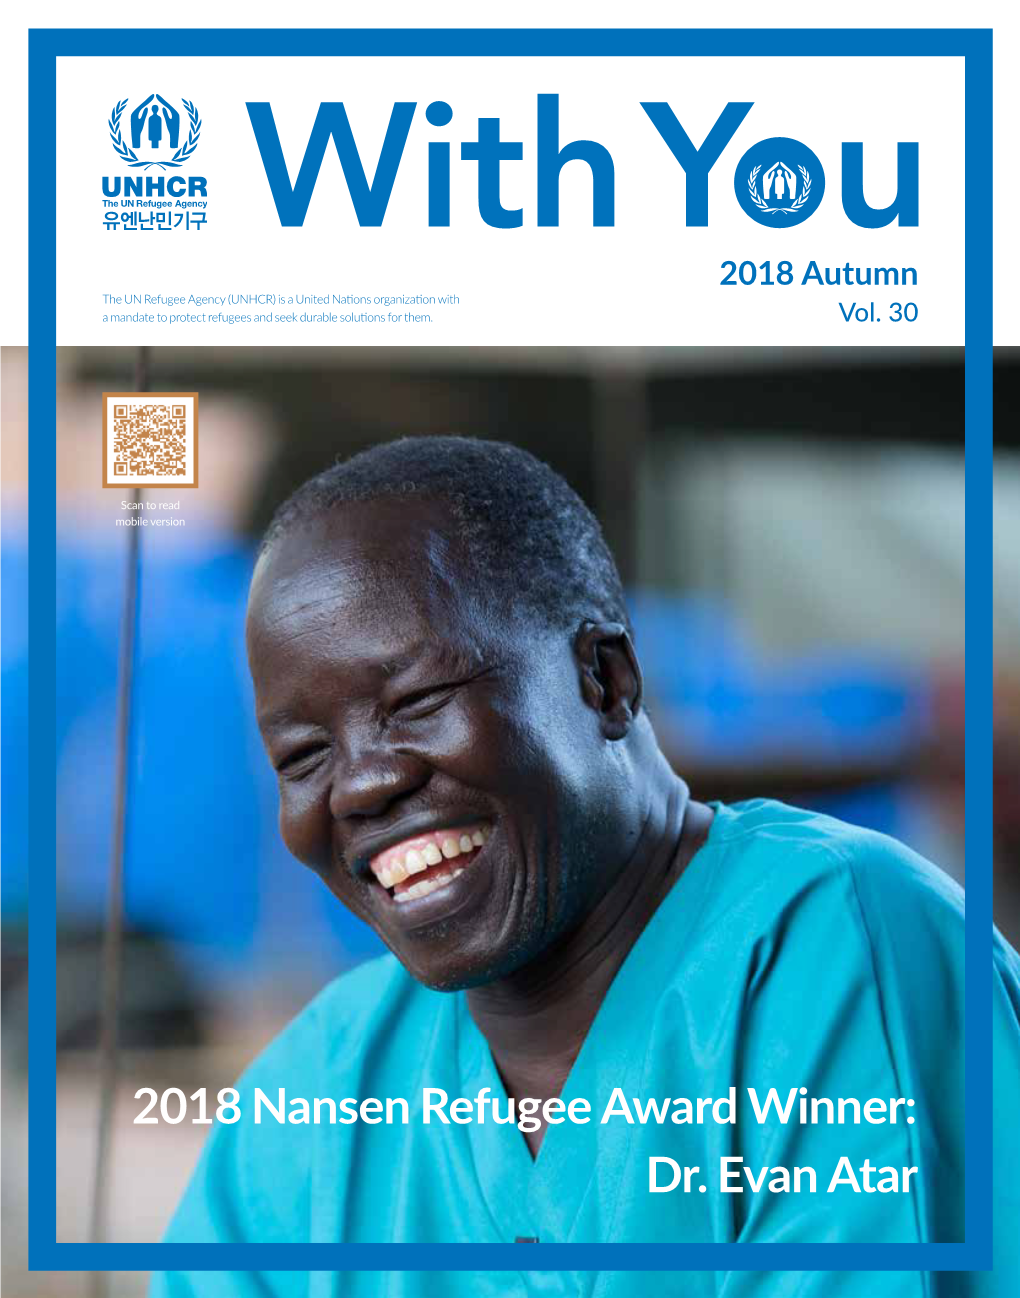 2018 Nansen Refugee Award Winner: Dr. Evan Atar